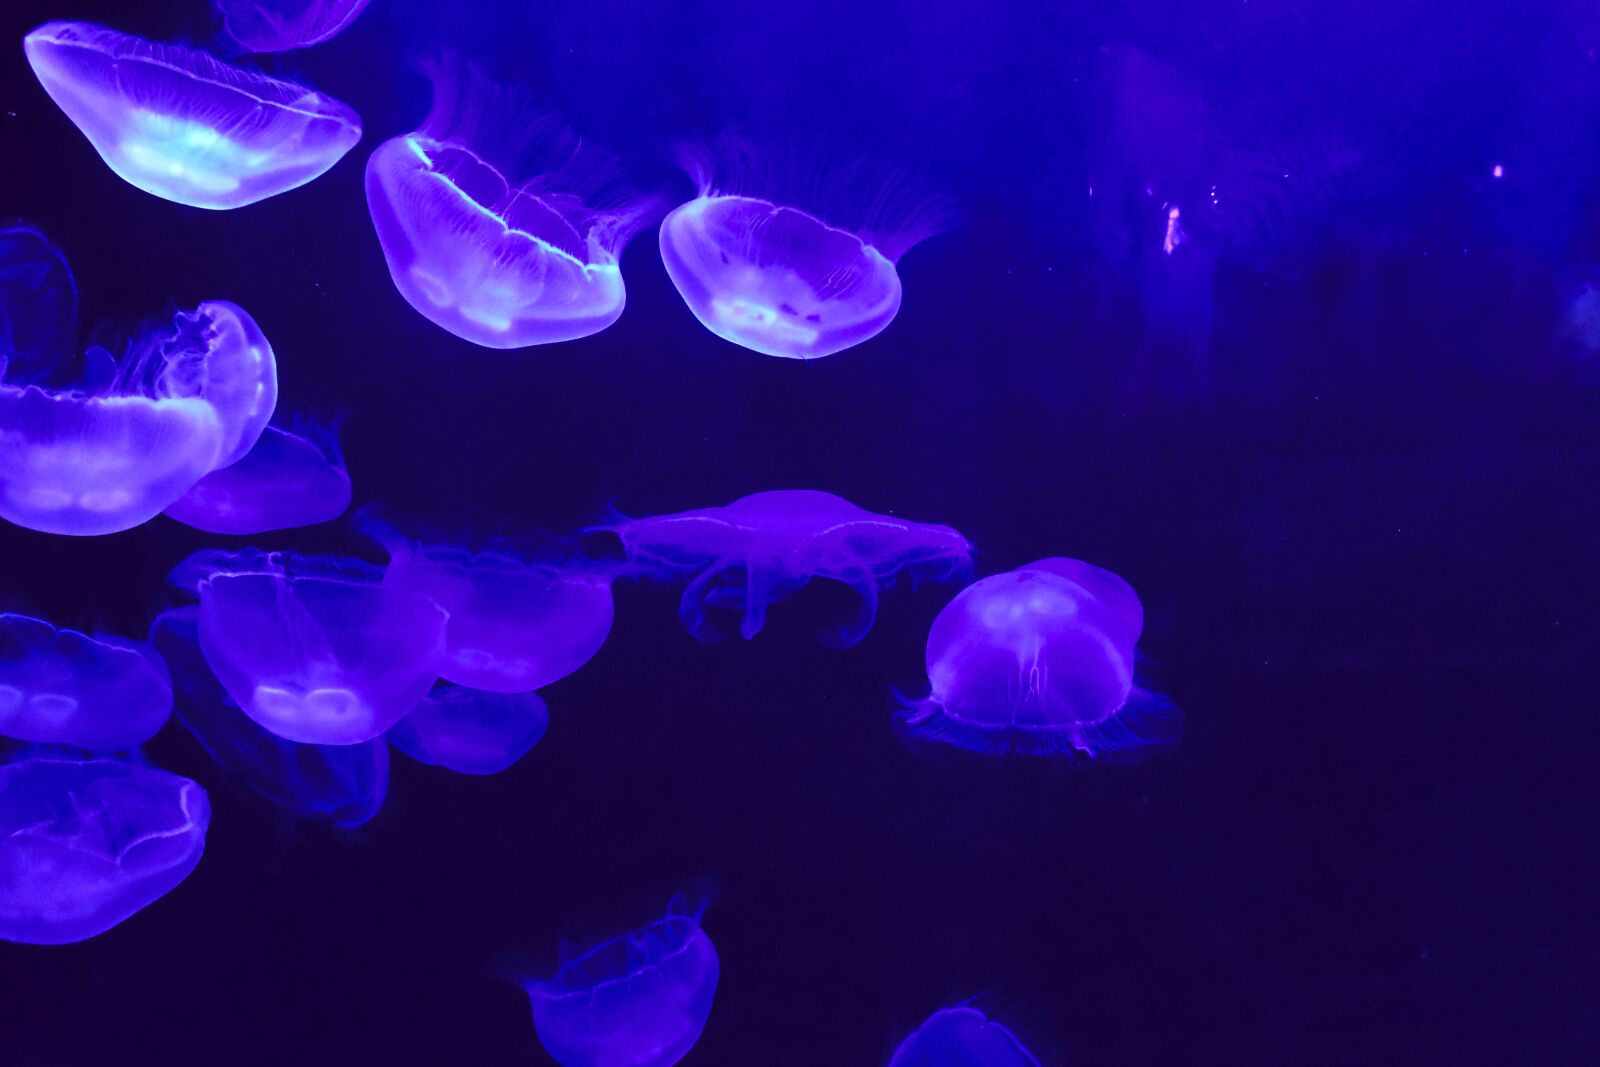 Nikon 1 J4 sample photo. Jellyfish, blue, aquarium photography